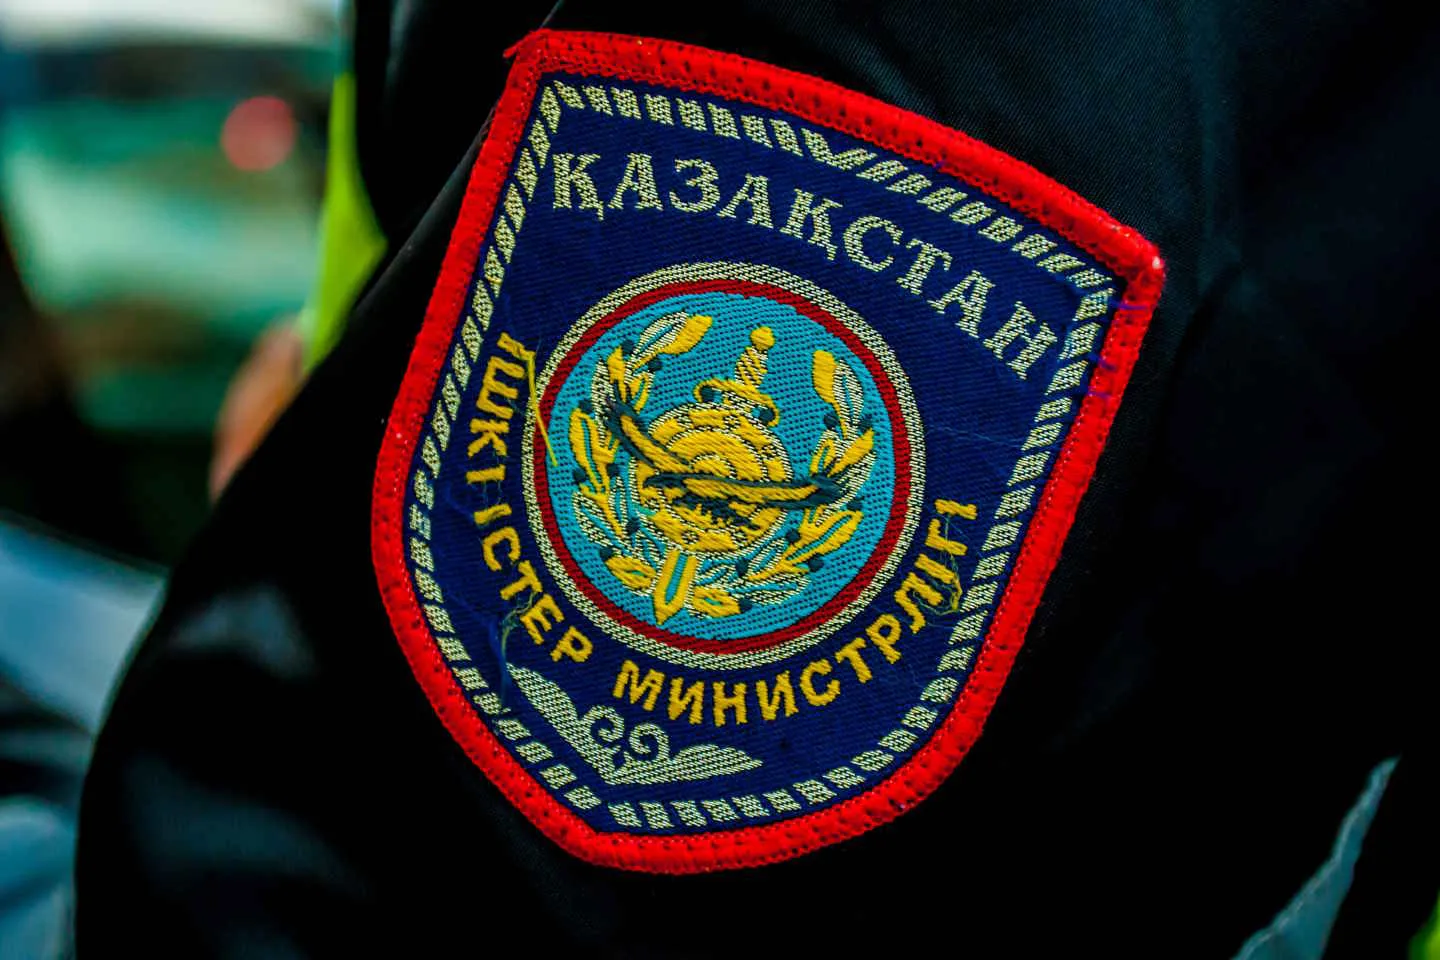 Происшествия в Казахстане и мире / Криминальные новости / Более 150 кг наркотиков изъяли полицейские за вторую декаду декабря в РК